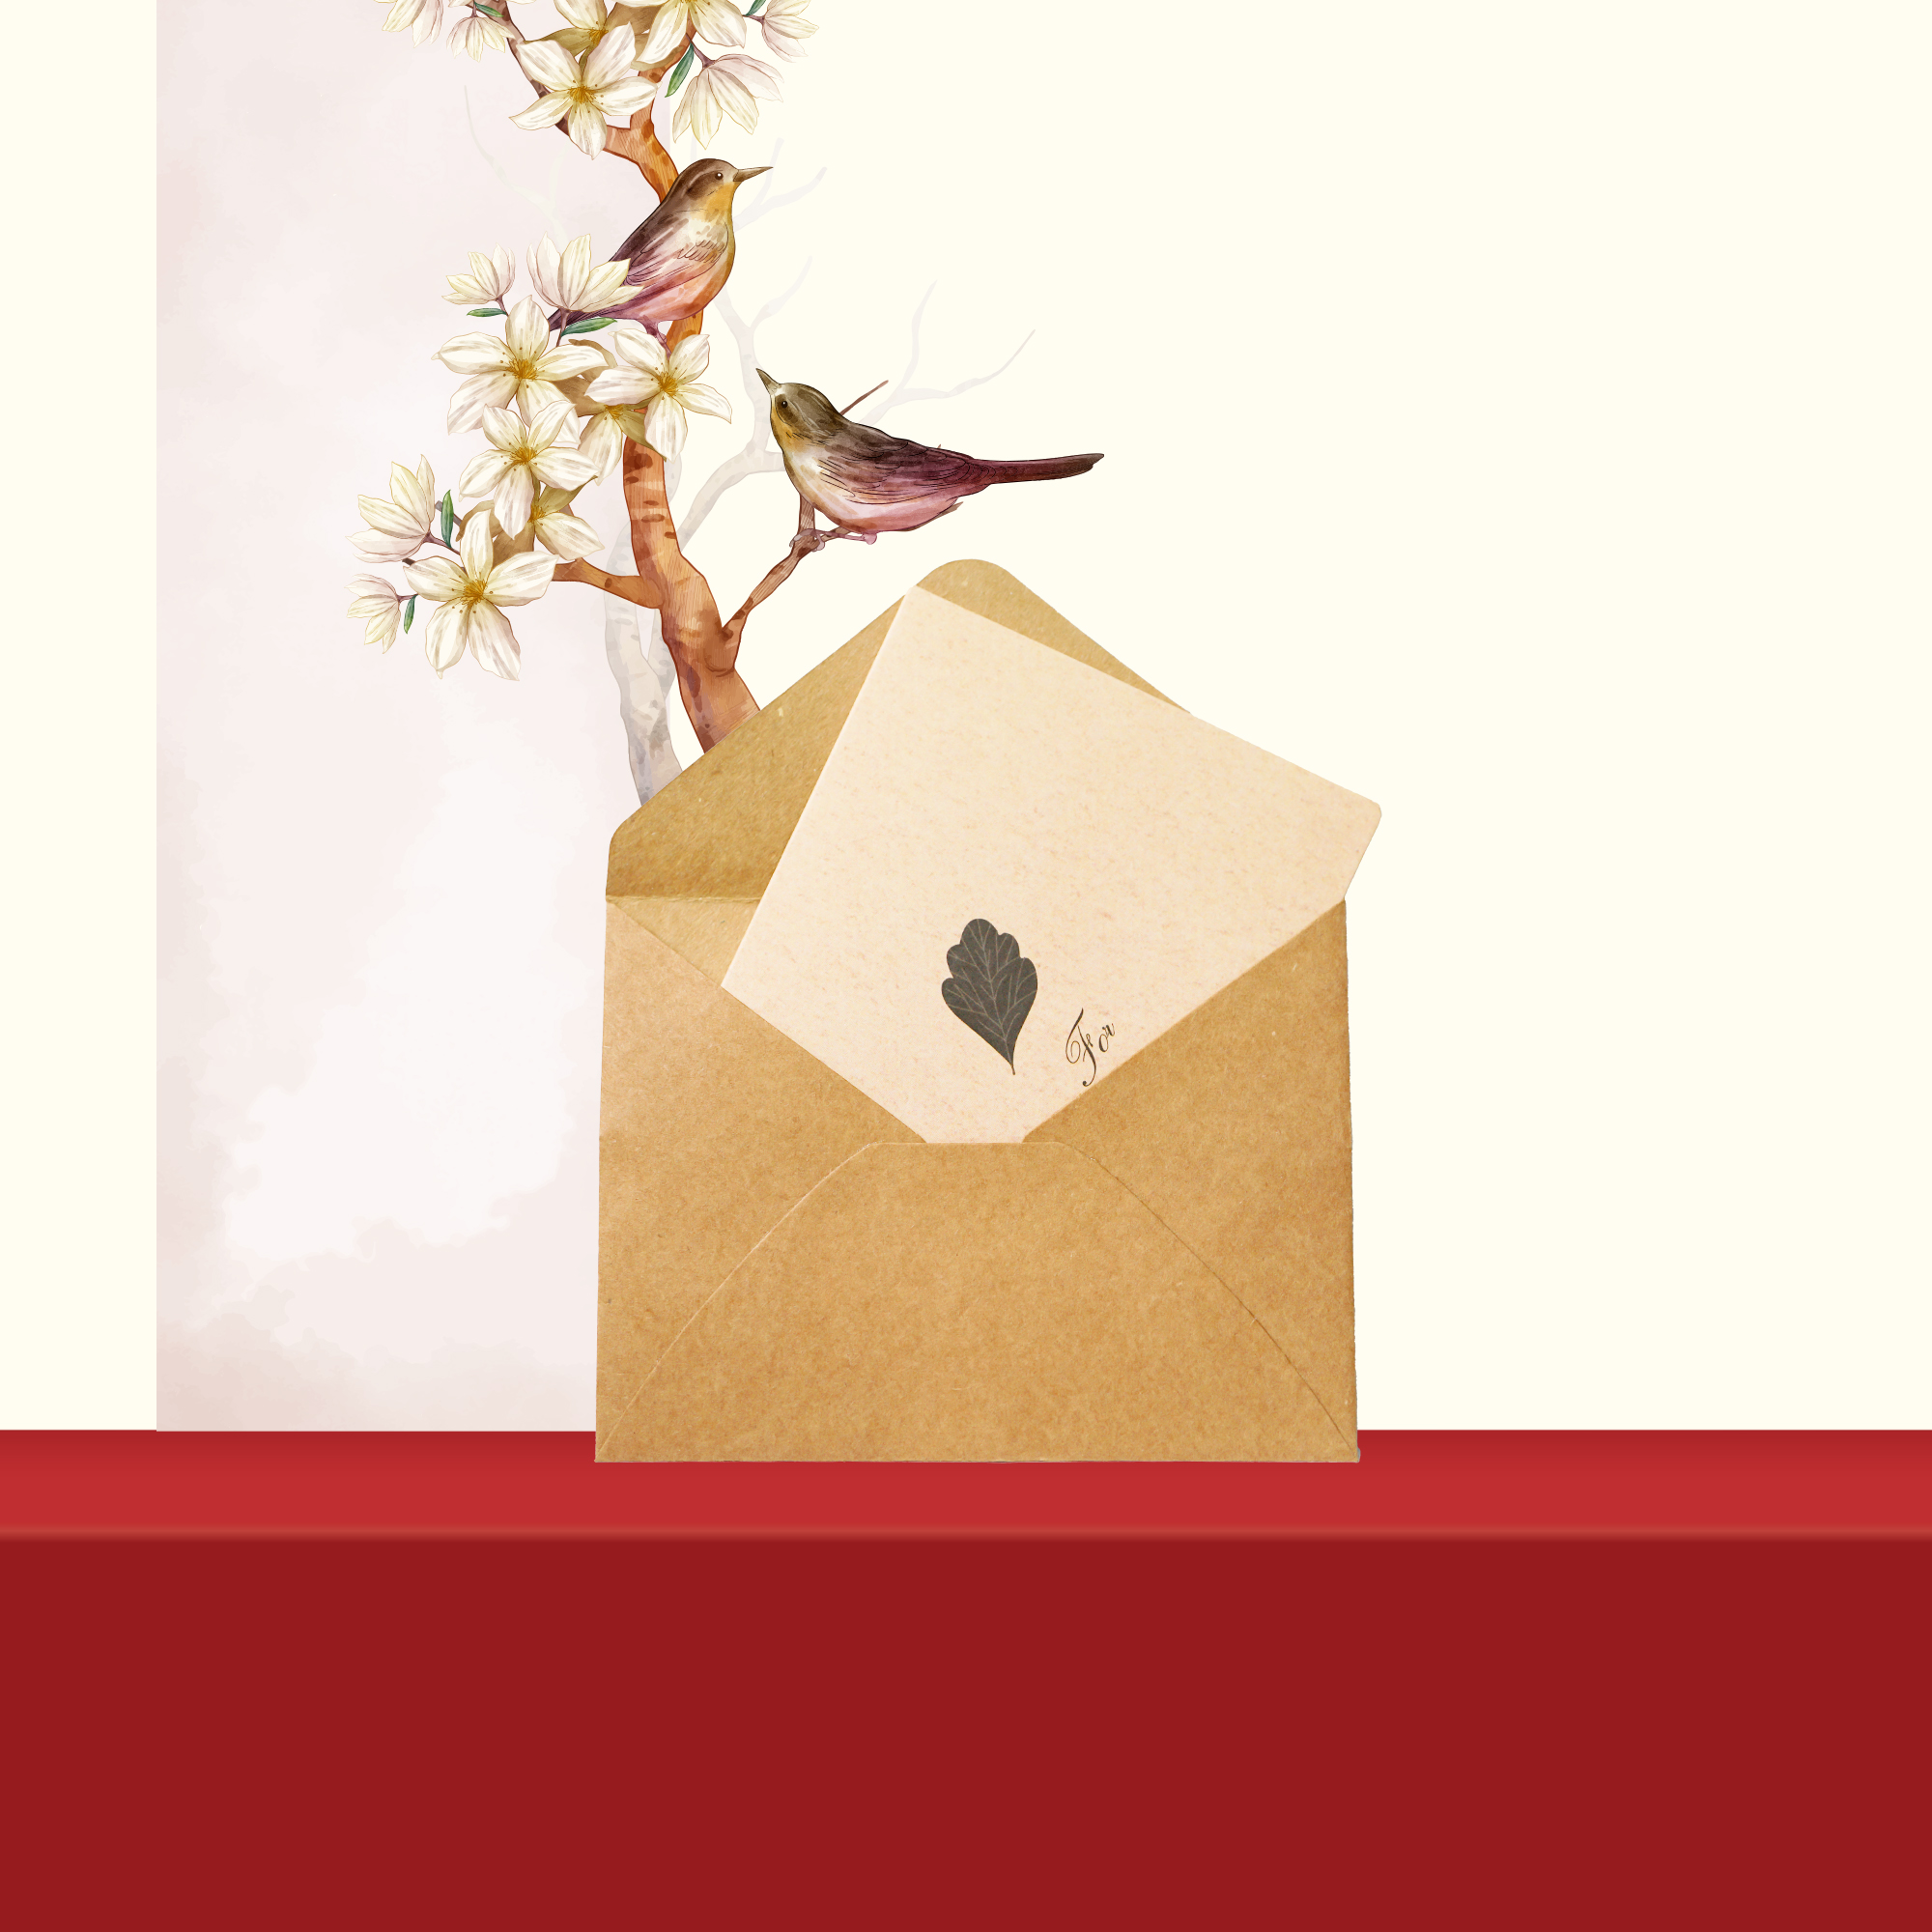 Hộp quà tặng, set quà tặng saffron ngâm mật ong và táo đỏ / kỷ tử Kingdom Herb chính hãng (tặng kèm 1 que lấy mật + 1 bình thuỷ tinh + 1 thiệp chúc + 1 túi giấy)